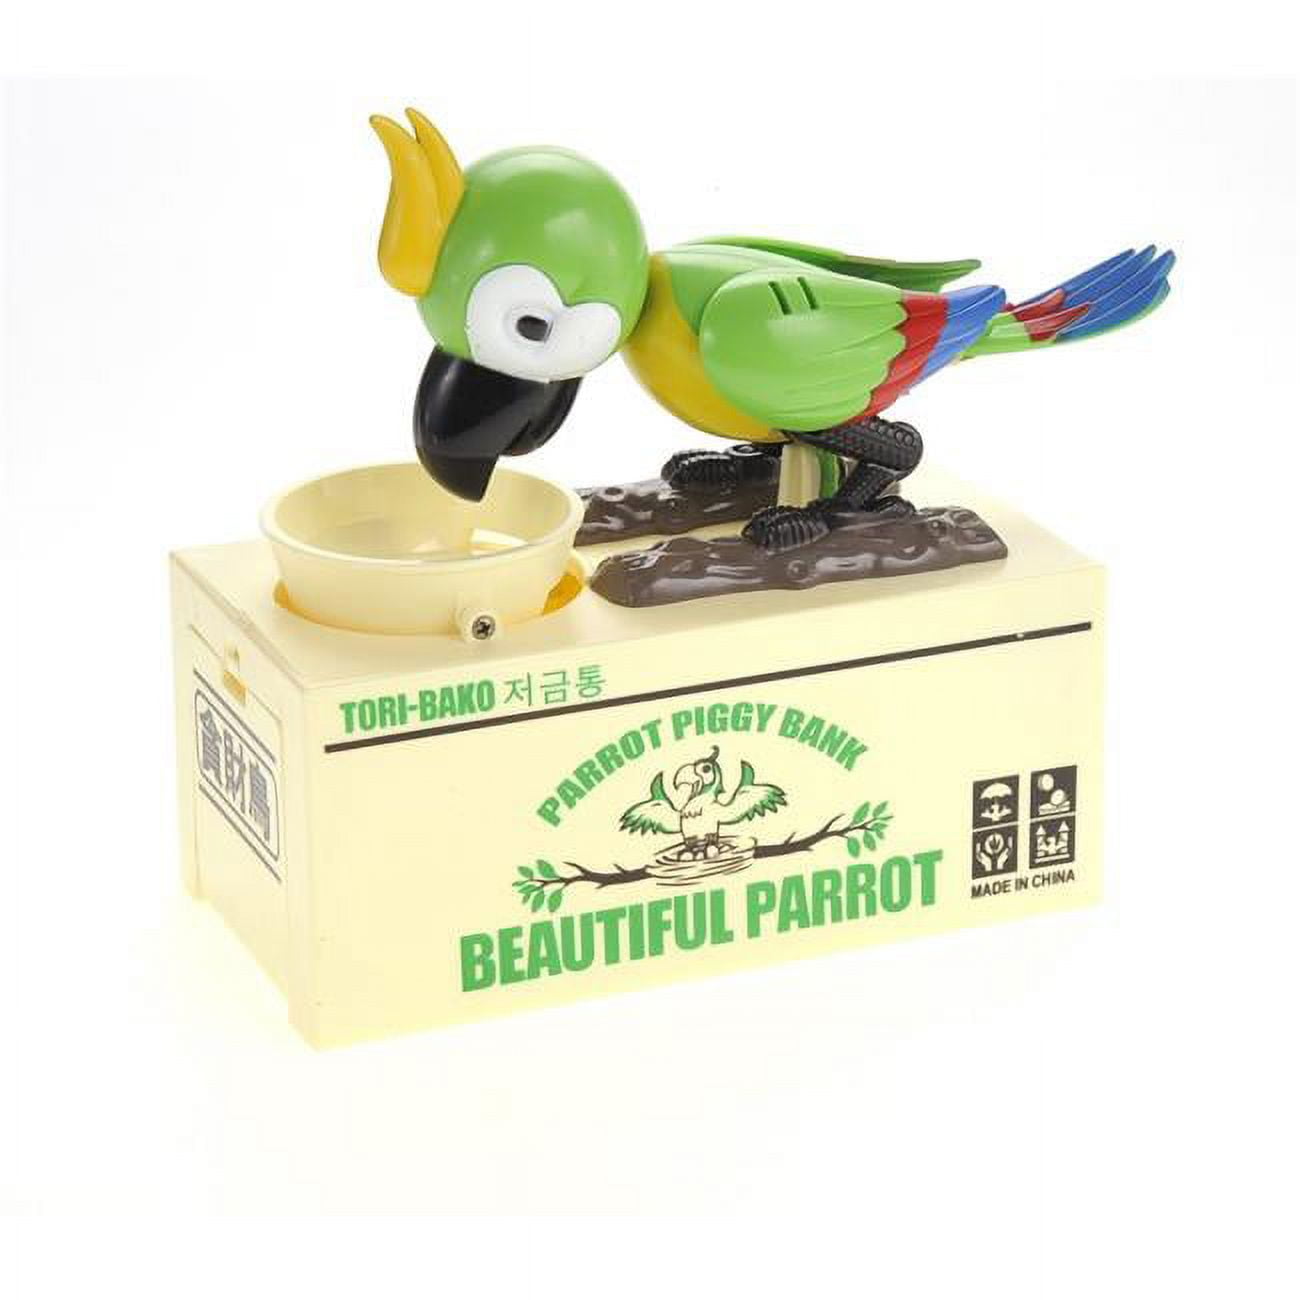 Mpt501 Green Cute Parrot Piggy Bank - Green